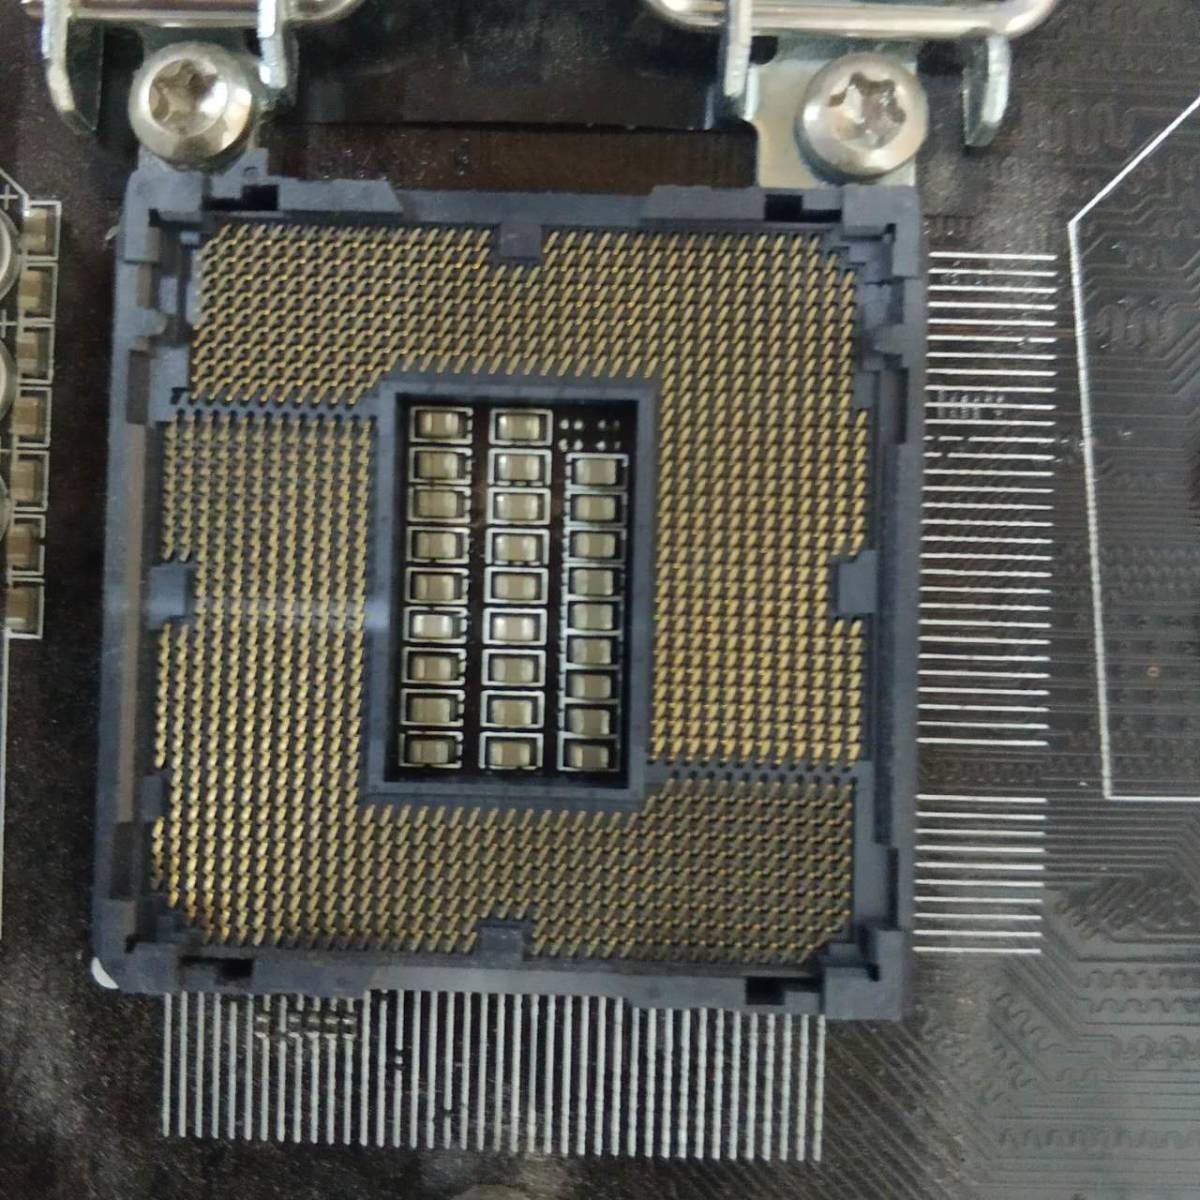 MSI Z87-G43/ATX материнская плата /INTEL(LGA1150)CPU соответствует /PC детали DIY ремонт материал * работоспособность не проверялась * б/у товар * текущее состояние доставка 